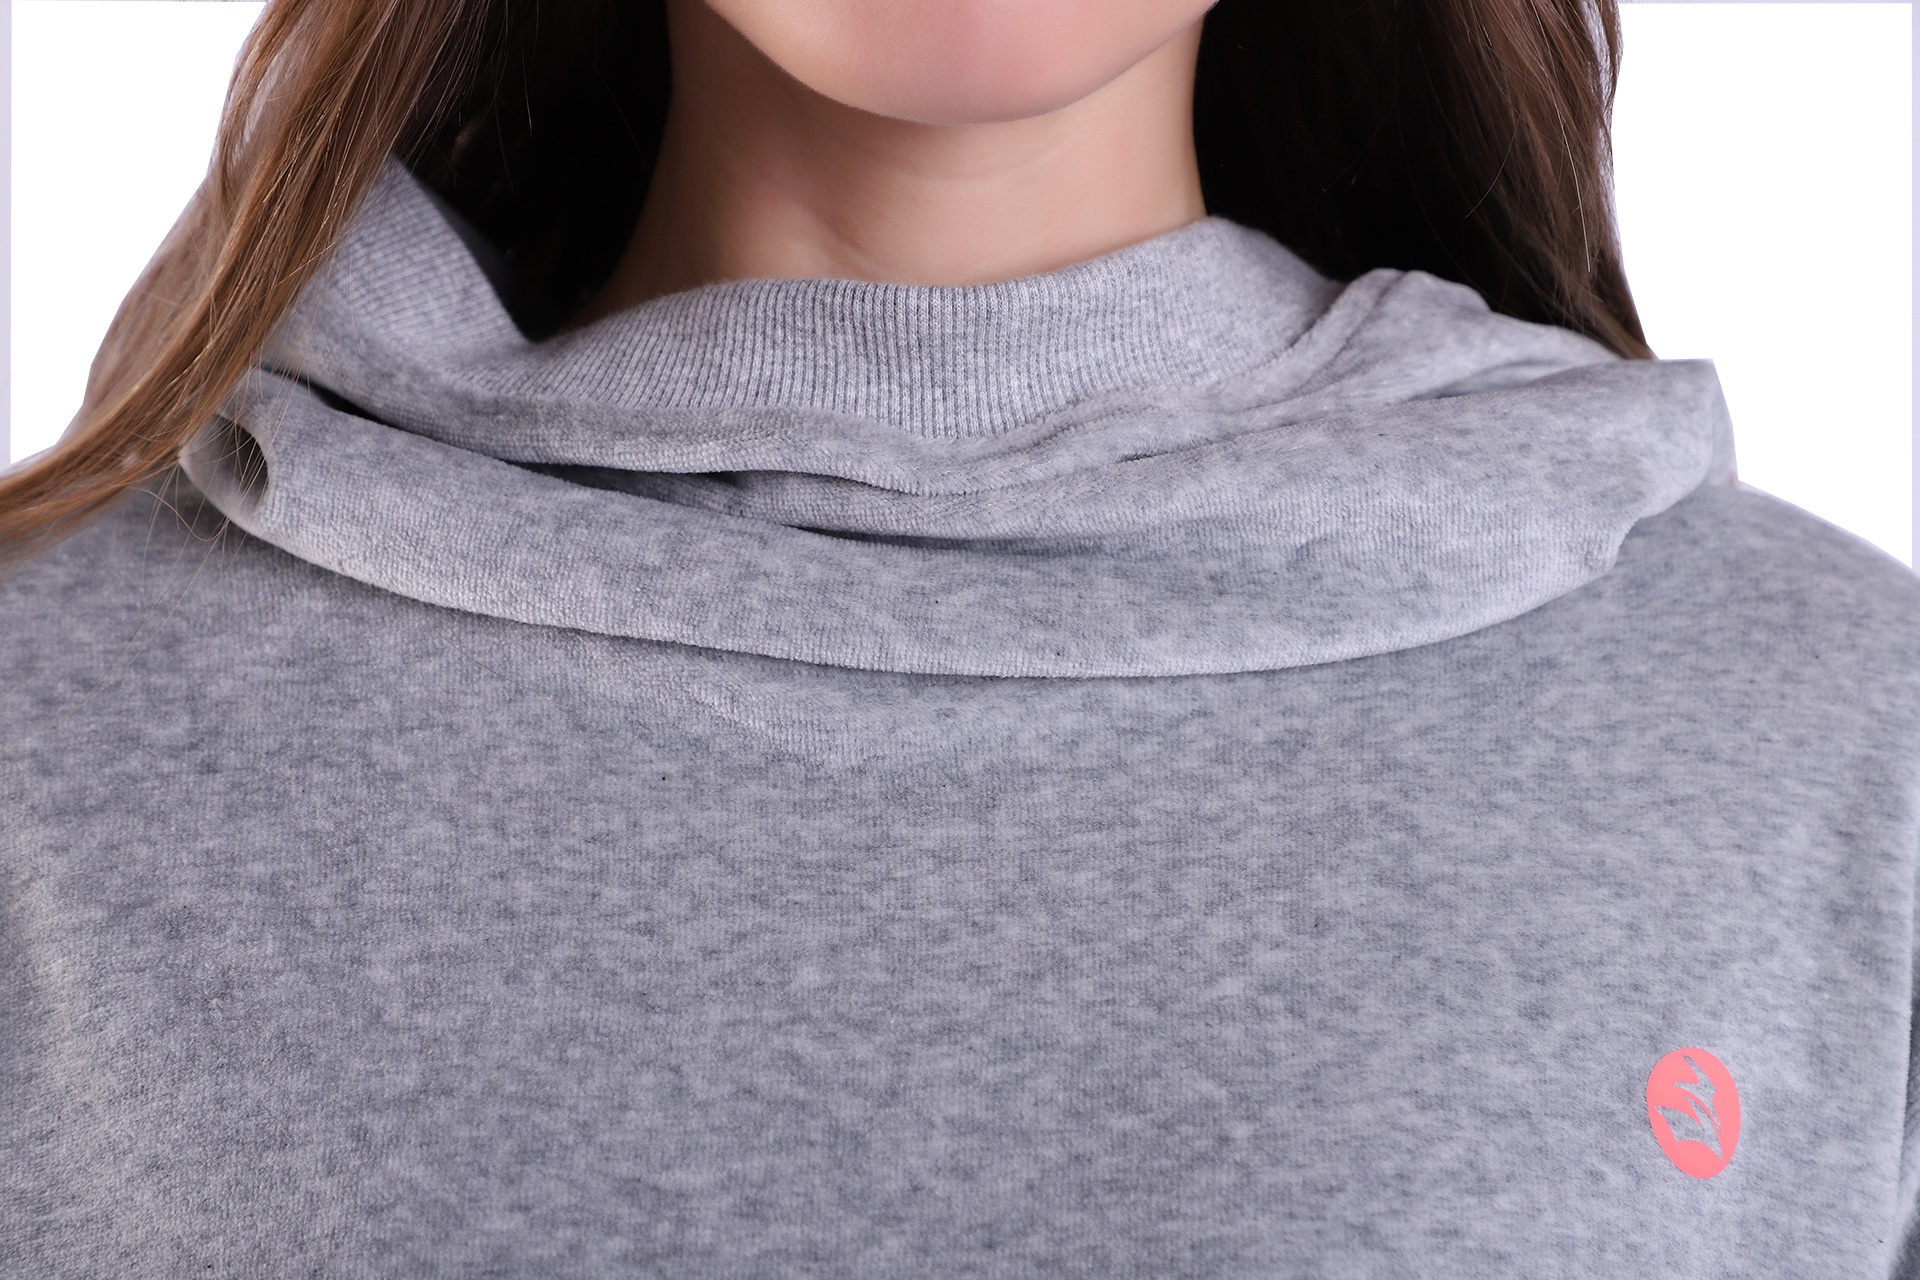 Sudadera con capucha atlética gris para mujer Camiseta de terciopelo técnico con cuello de capucha alto